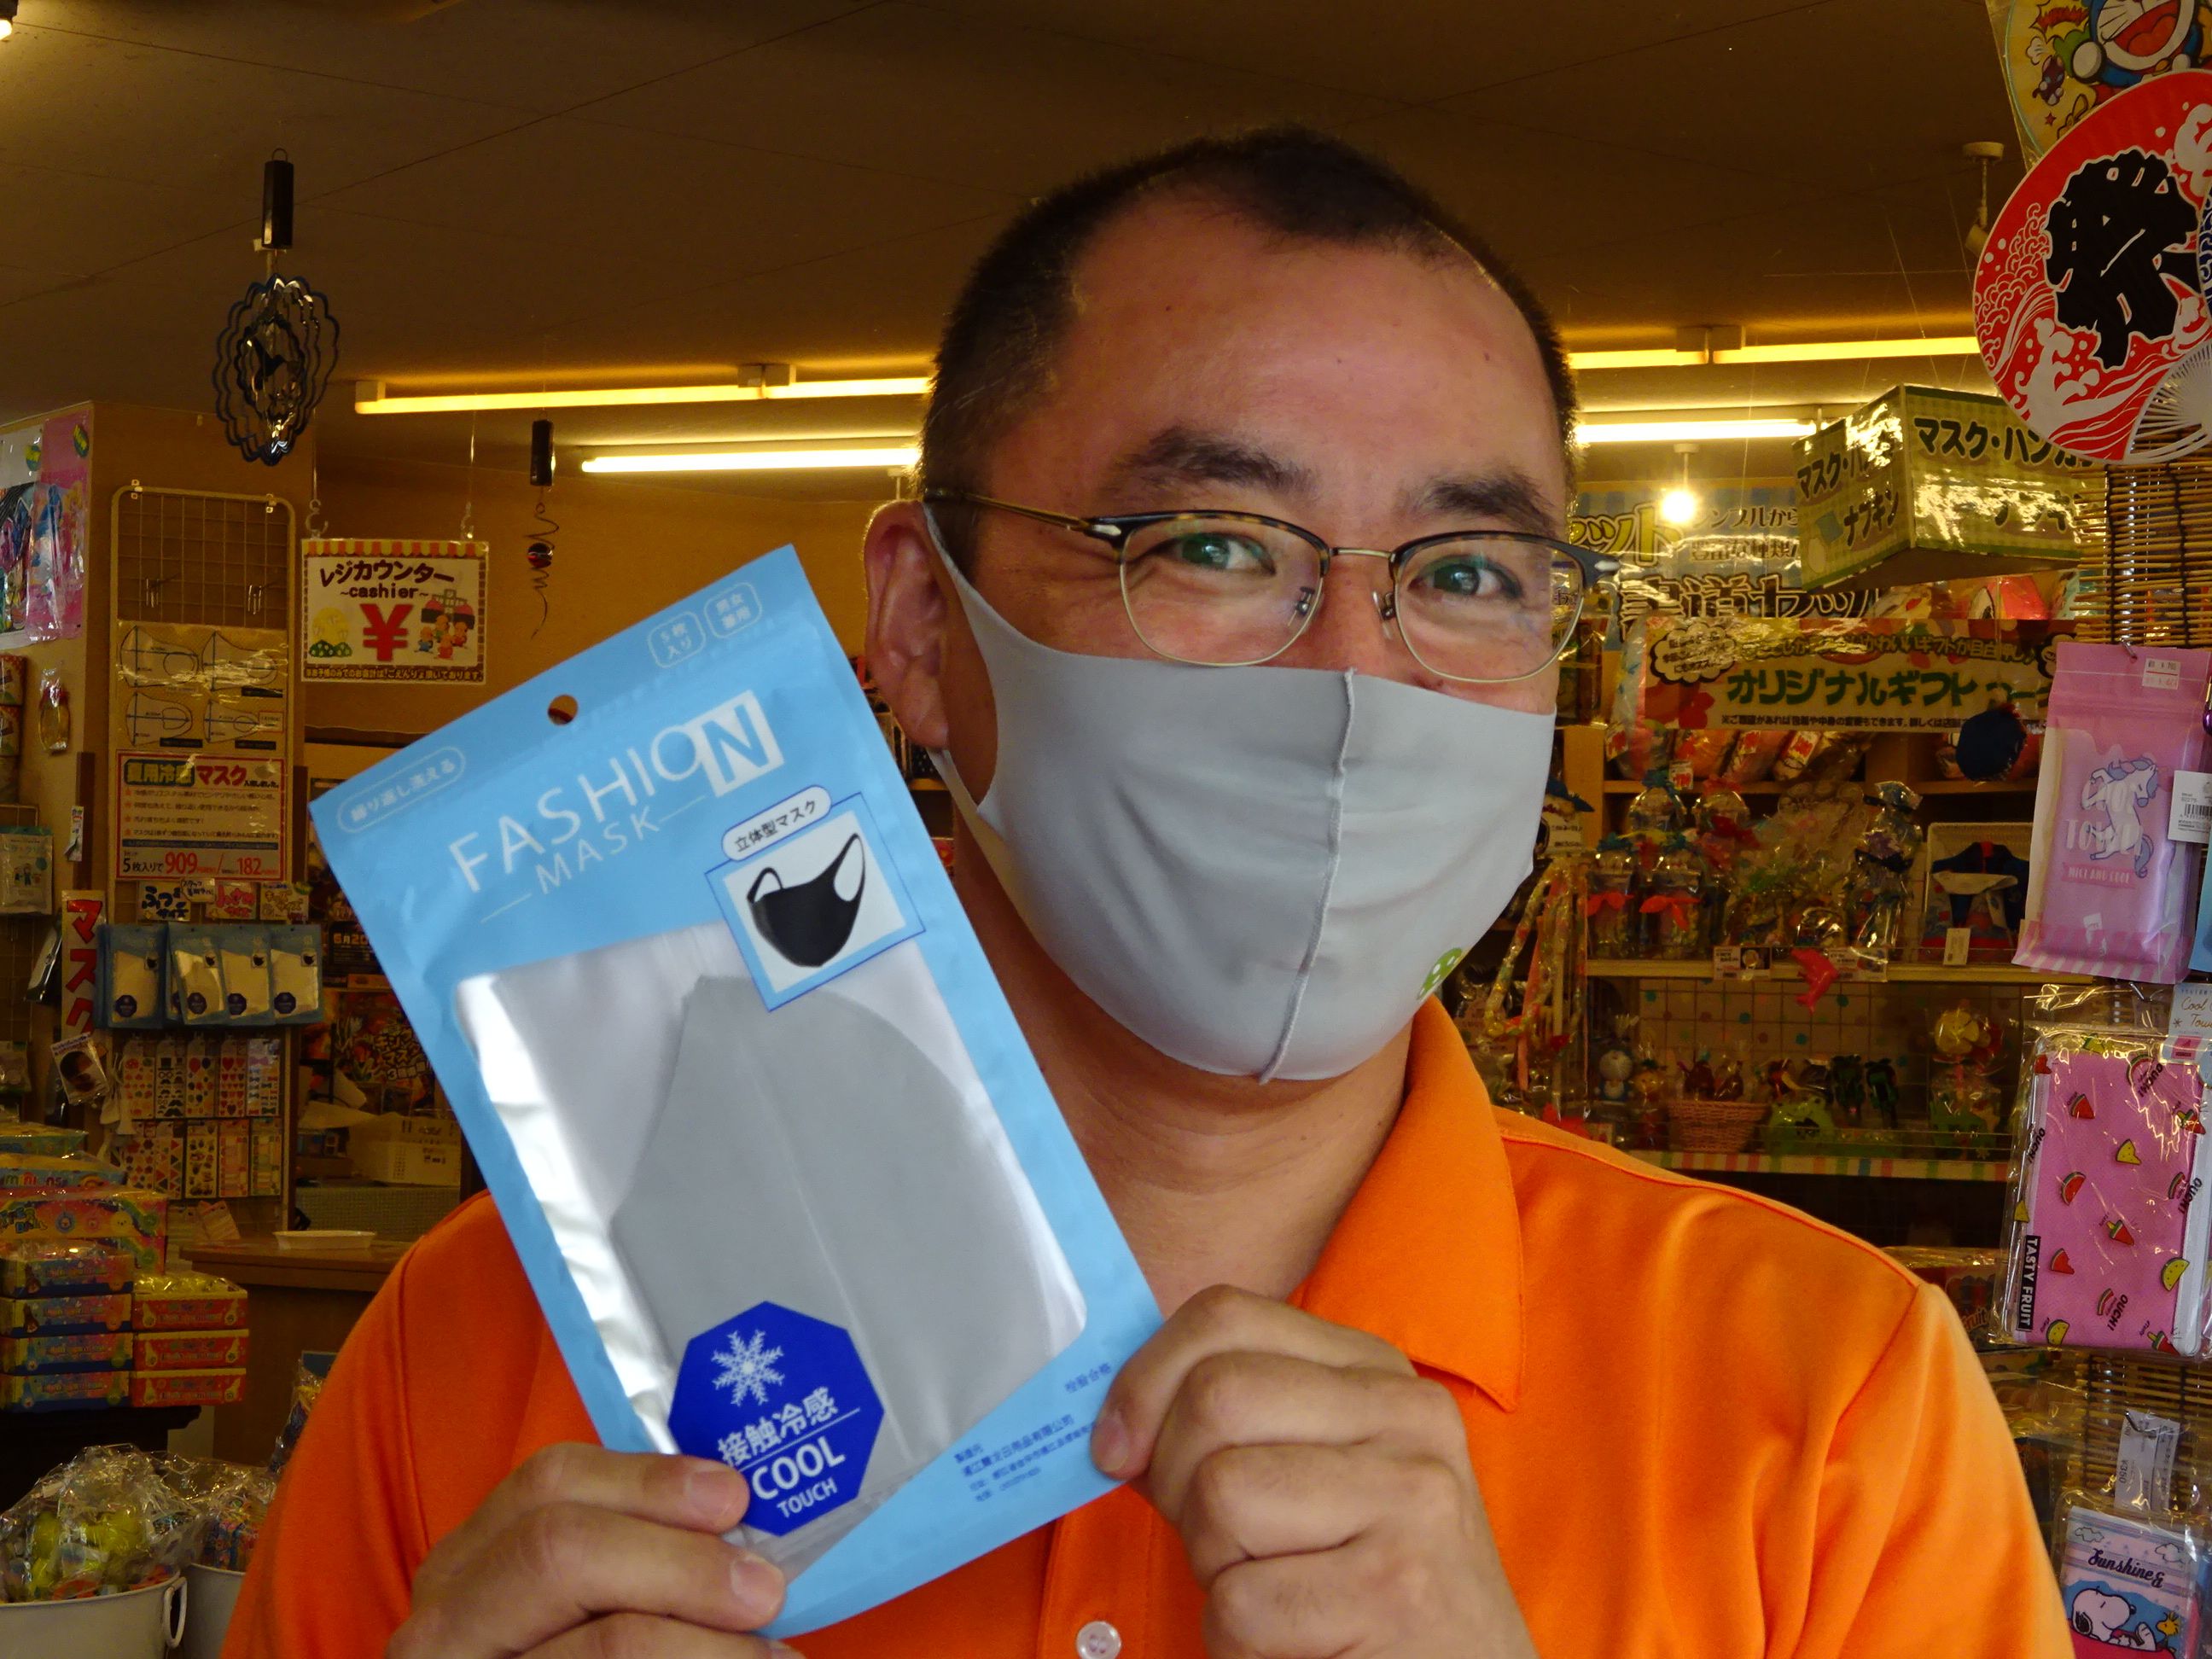 暑い名古屋で悩ましいマスク 夏用冷感マスクはいかが 達人に訊け 中日新聞web